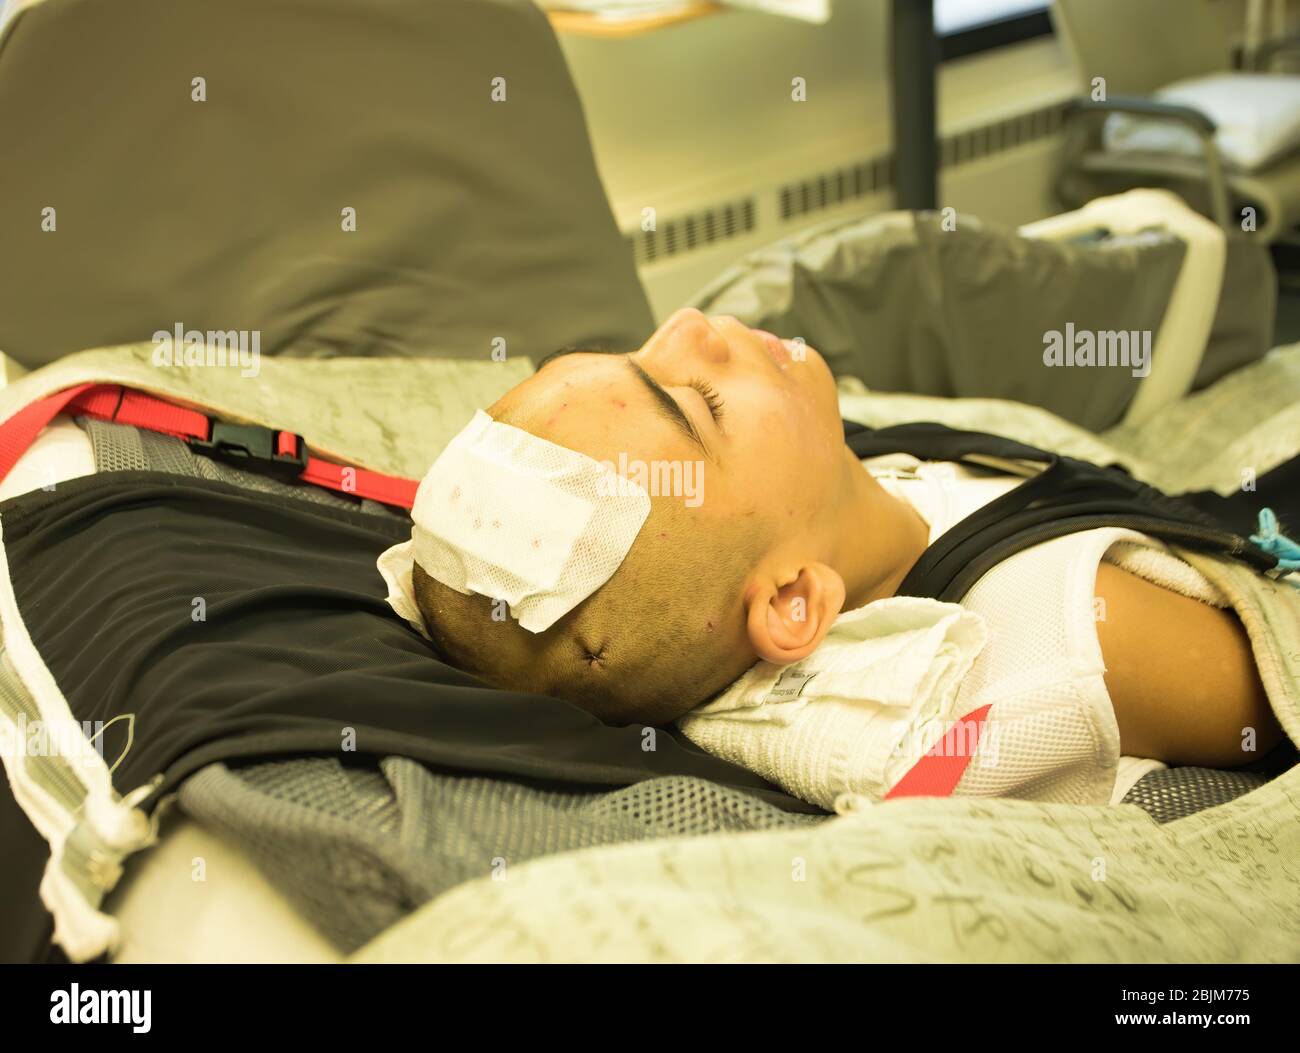 Jeune adolescent handicapé allongé dans le lit d'hôpital inconscient après avoir subi une chirurgie de la tête ou du cerveau Banque D'Images